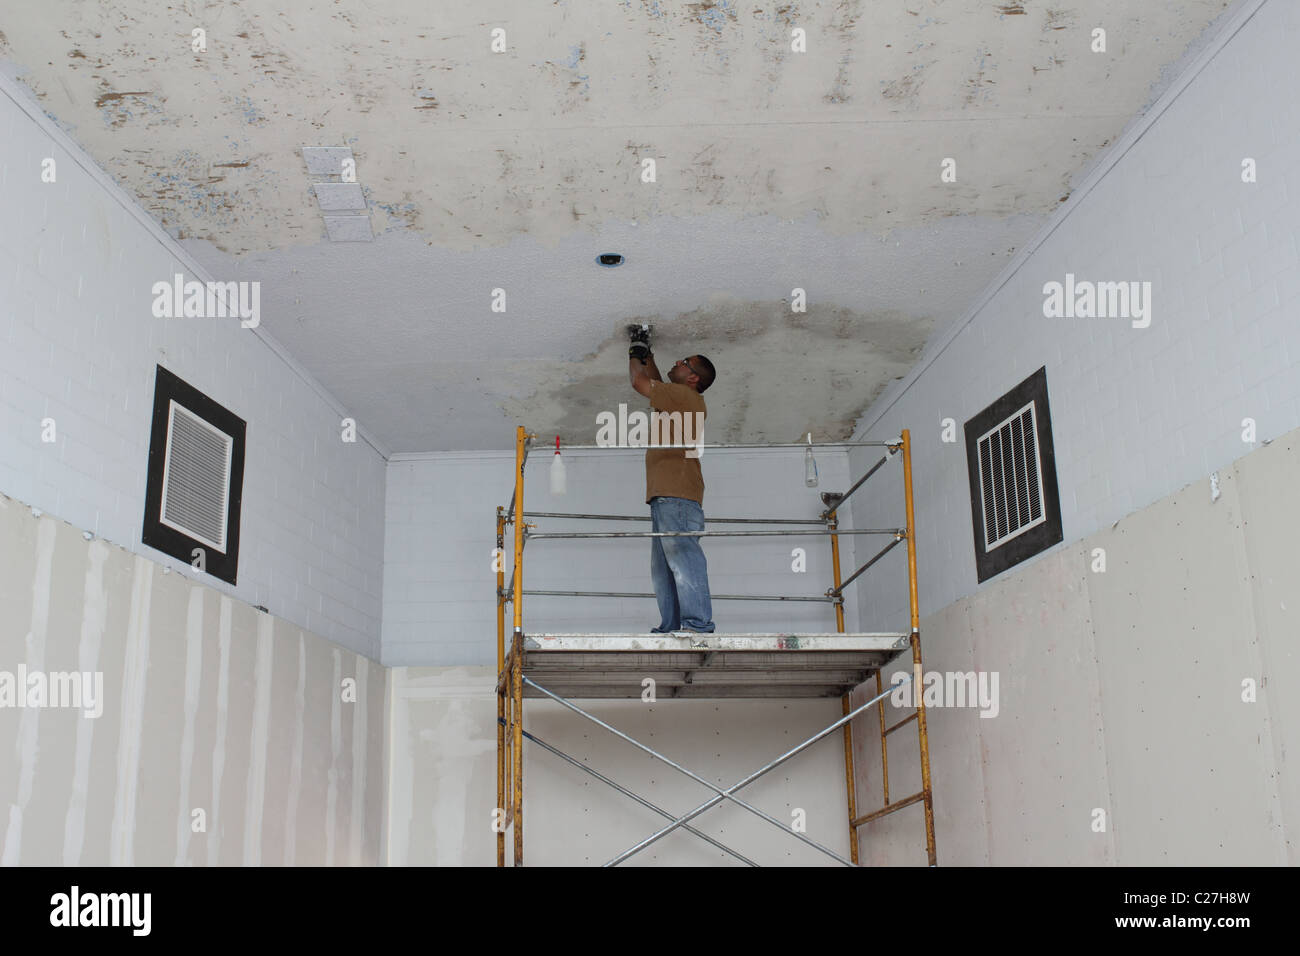 Man repairing ceiling at Barton Springs Pool building Stock Photo